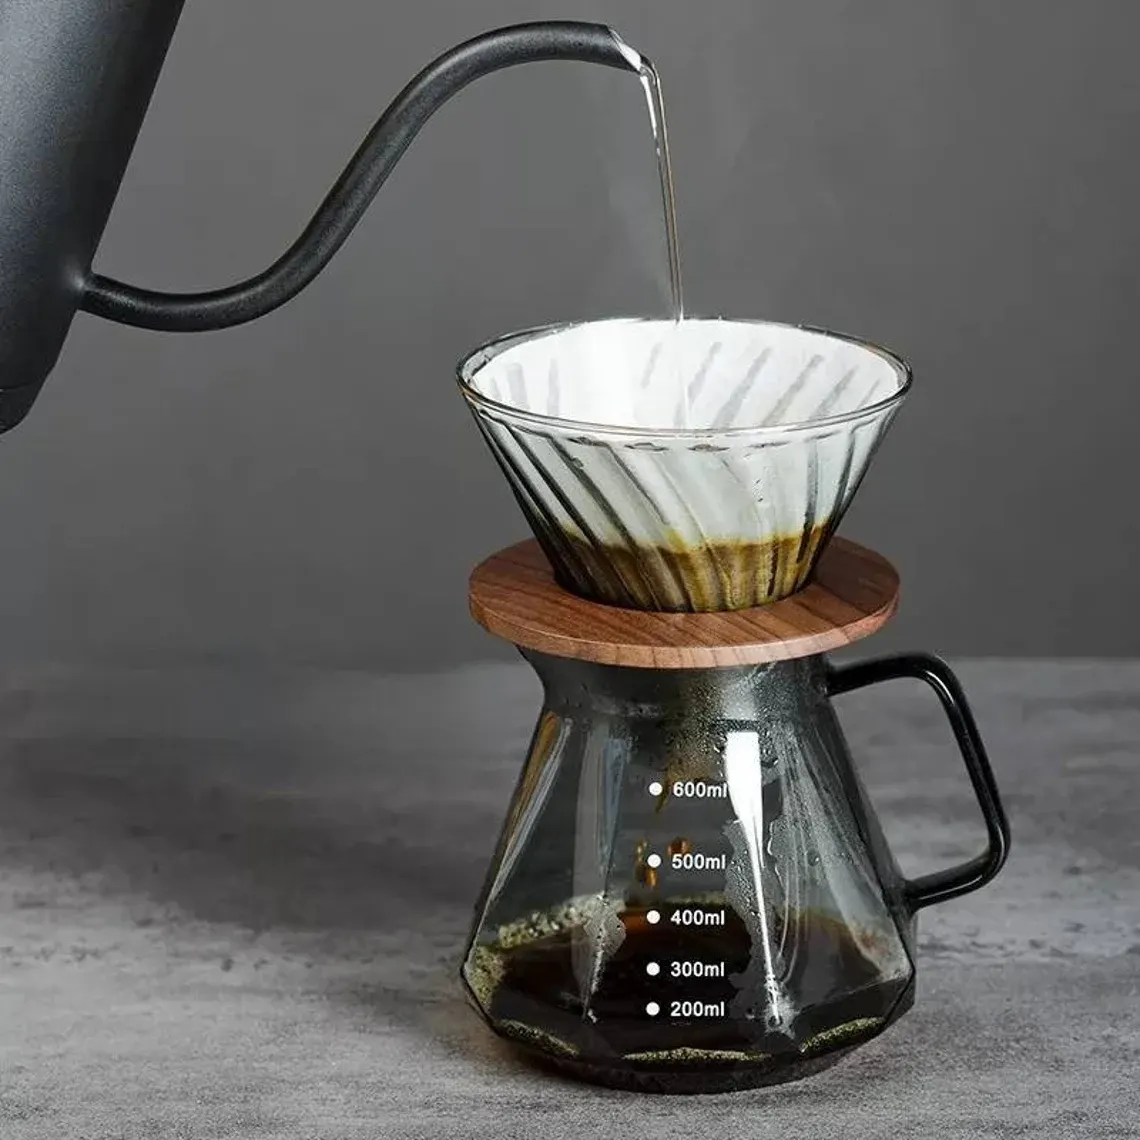 Contour Pour Over Coffee Set